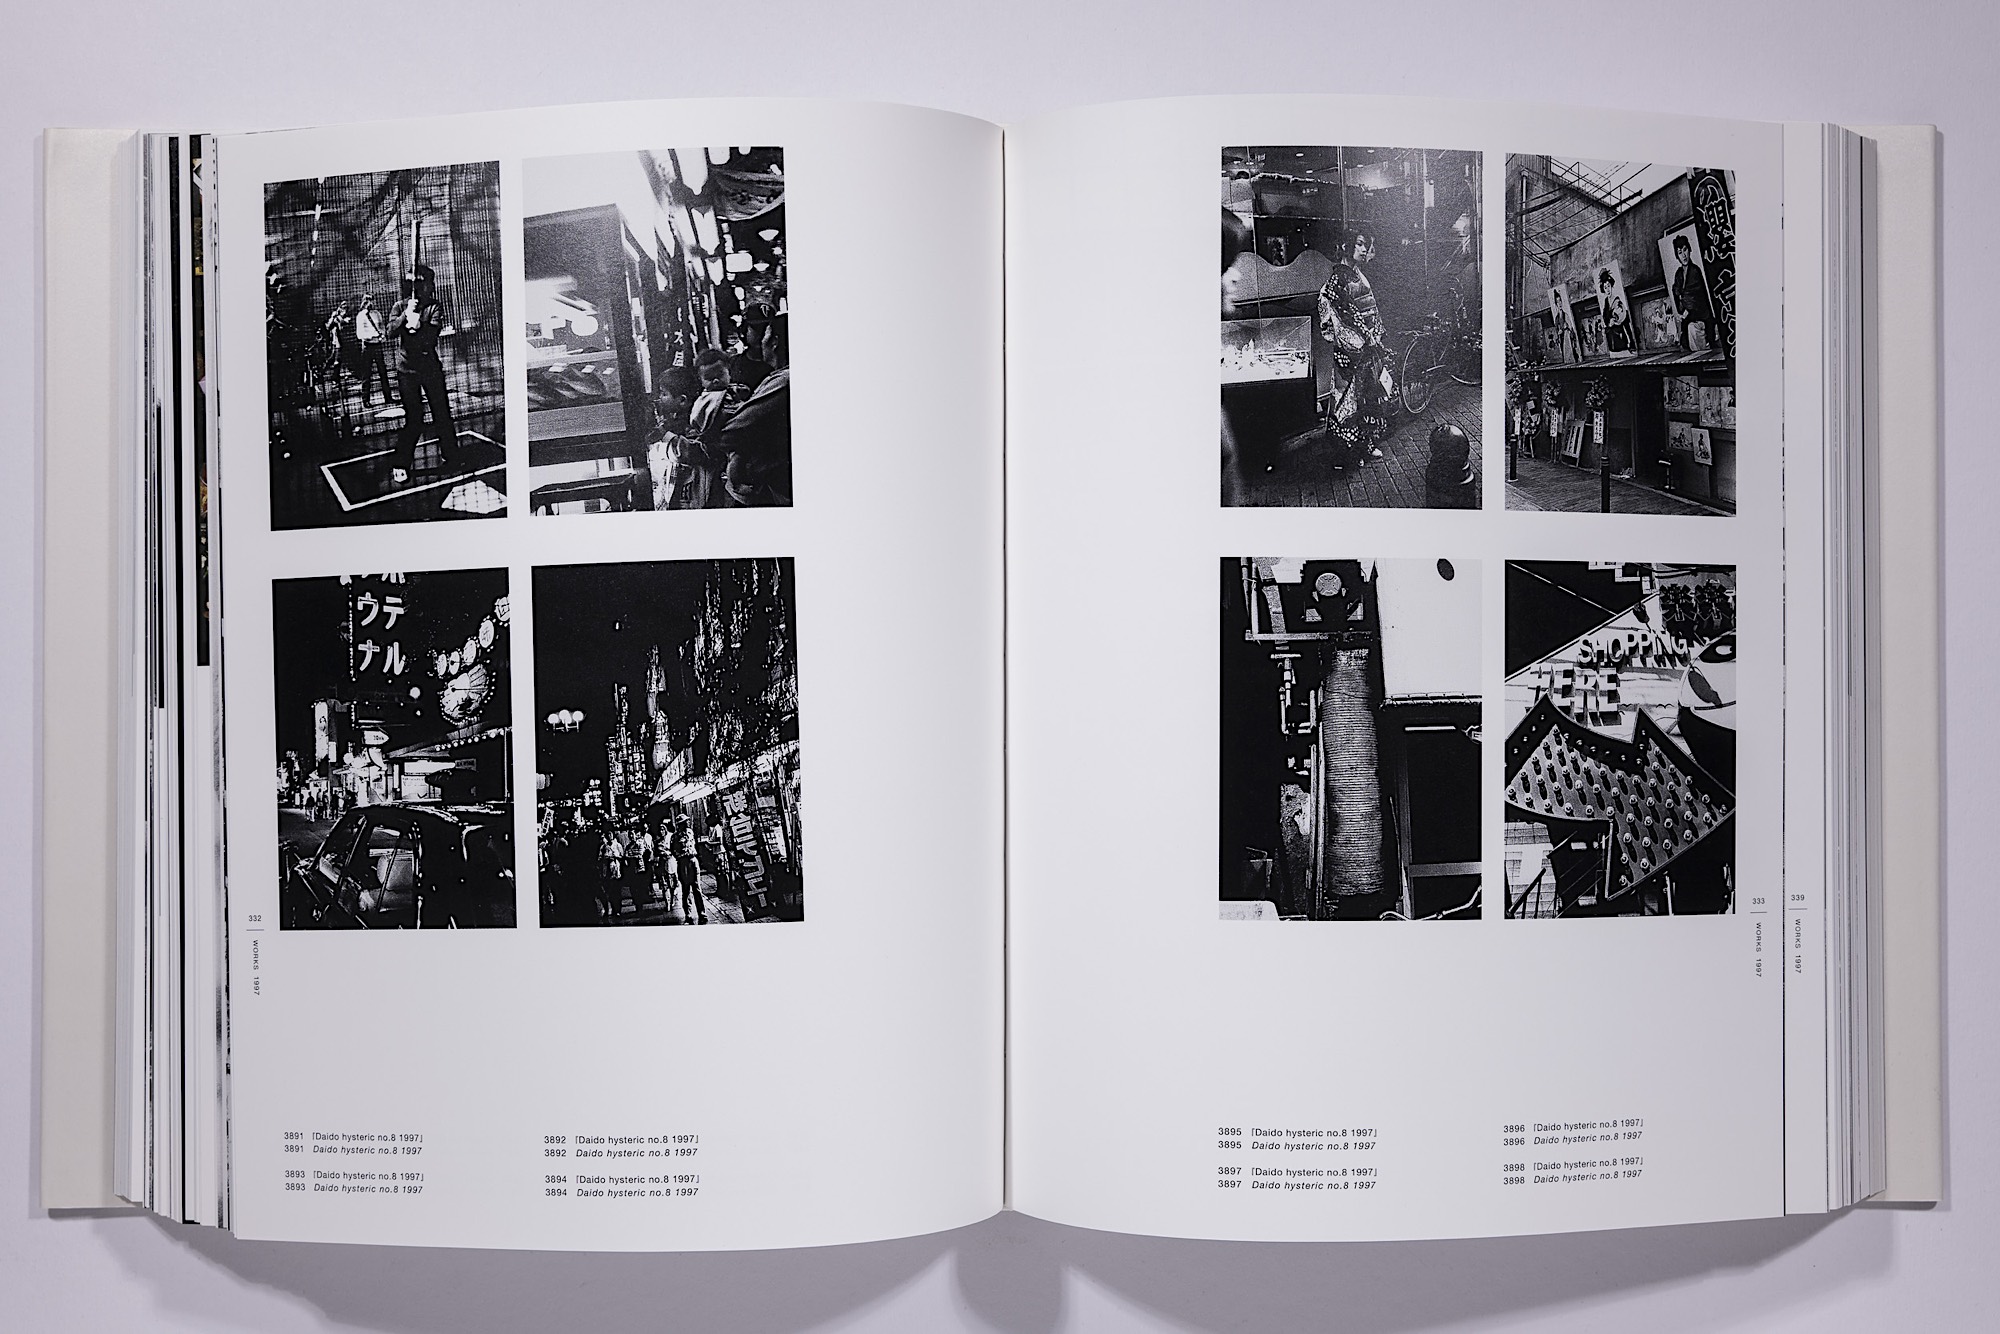 Daido Moriyama - The Complete Works of Daido Moriyama Image 37